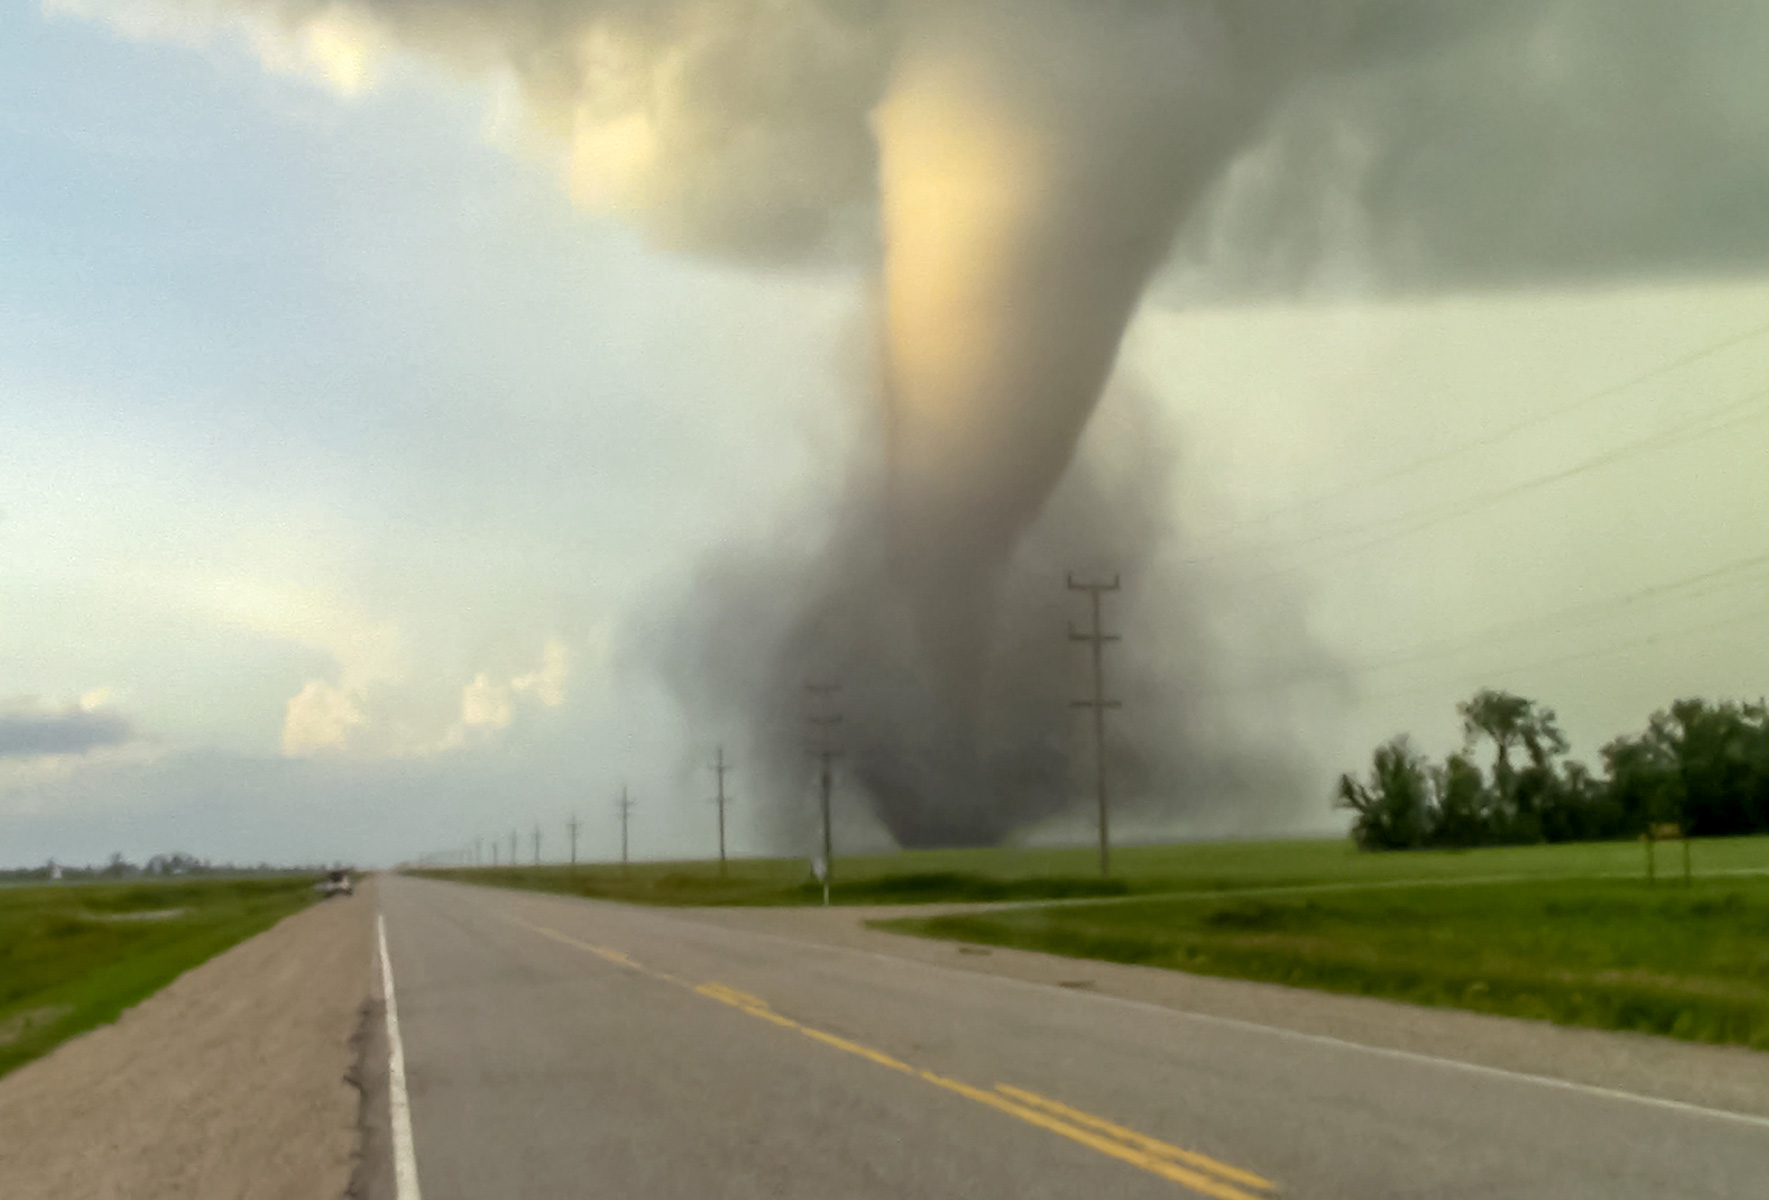 Texas Tornado Videos Show Mass Destruction After 'Monster' Storm